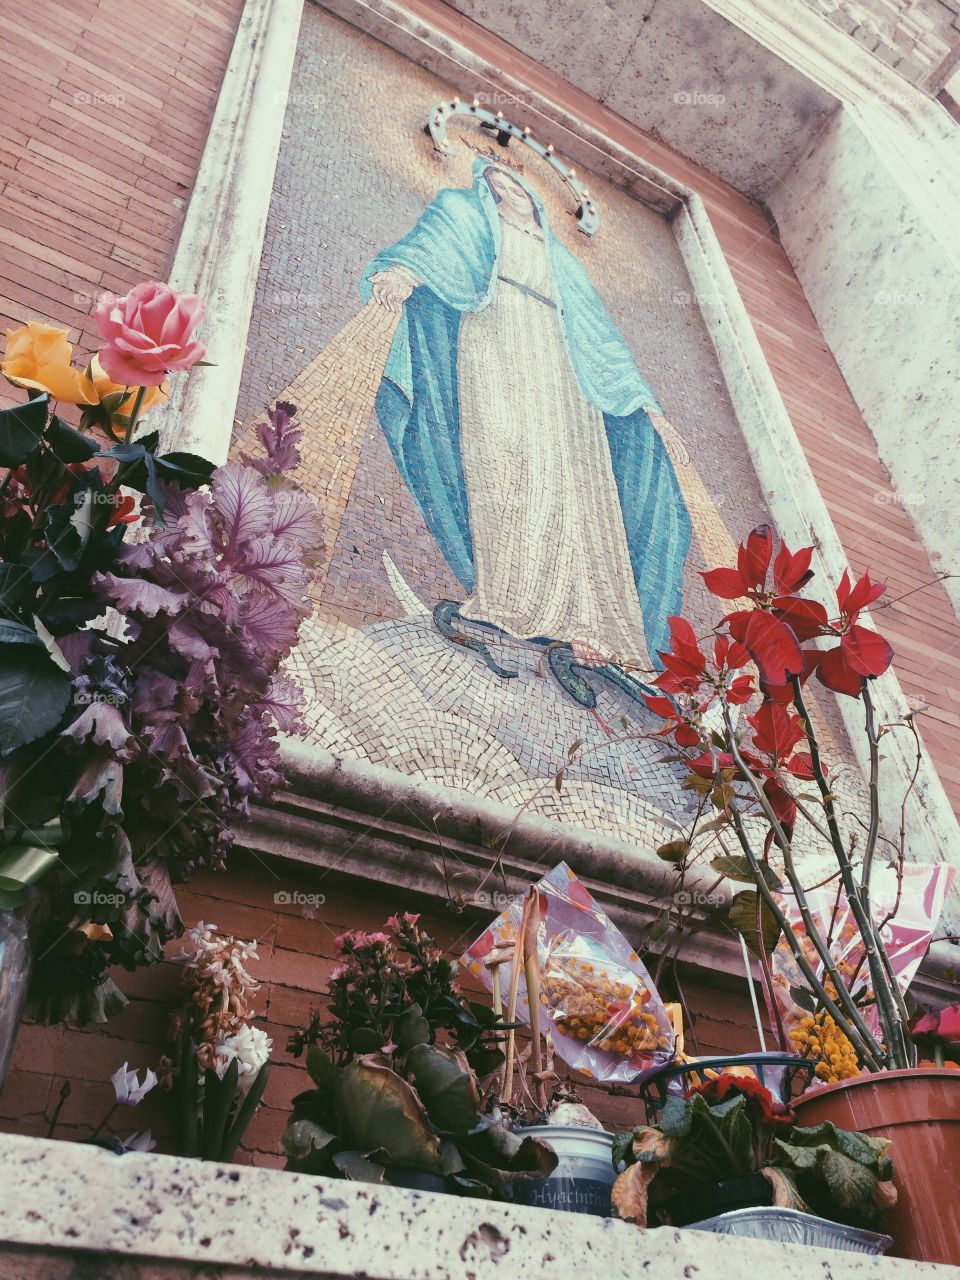 Virgin Mary shrine in Tuscany.